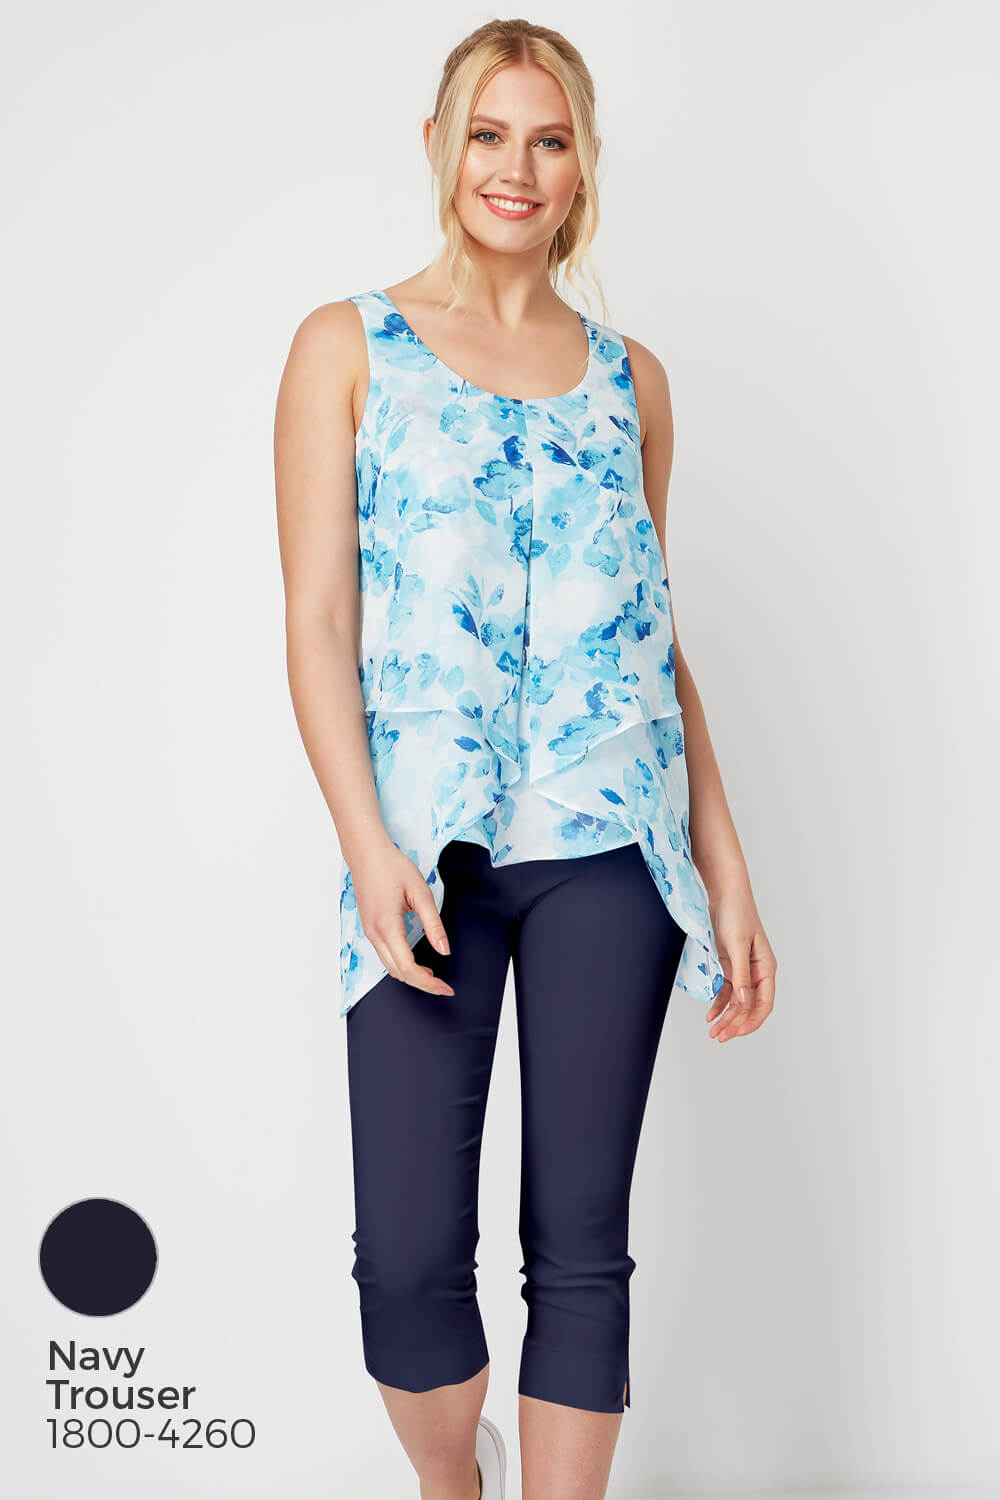 Blue Floral Print Asymmetric Chiffon Vest Top, Image 8 of 8